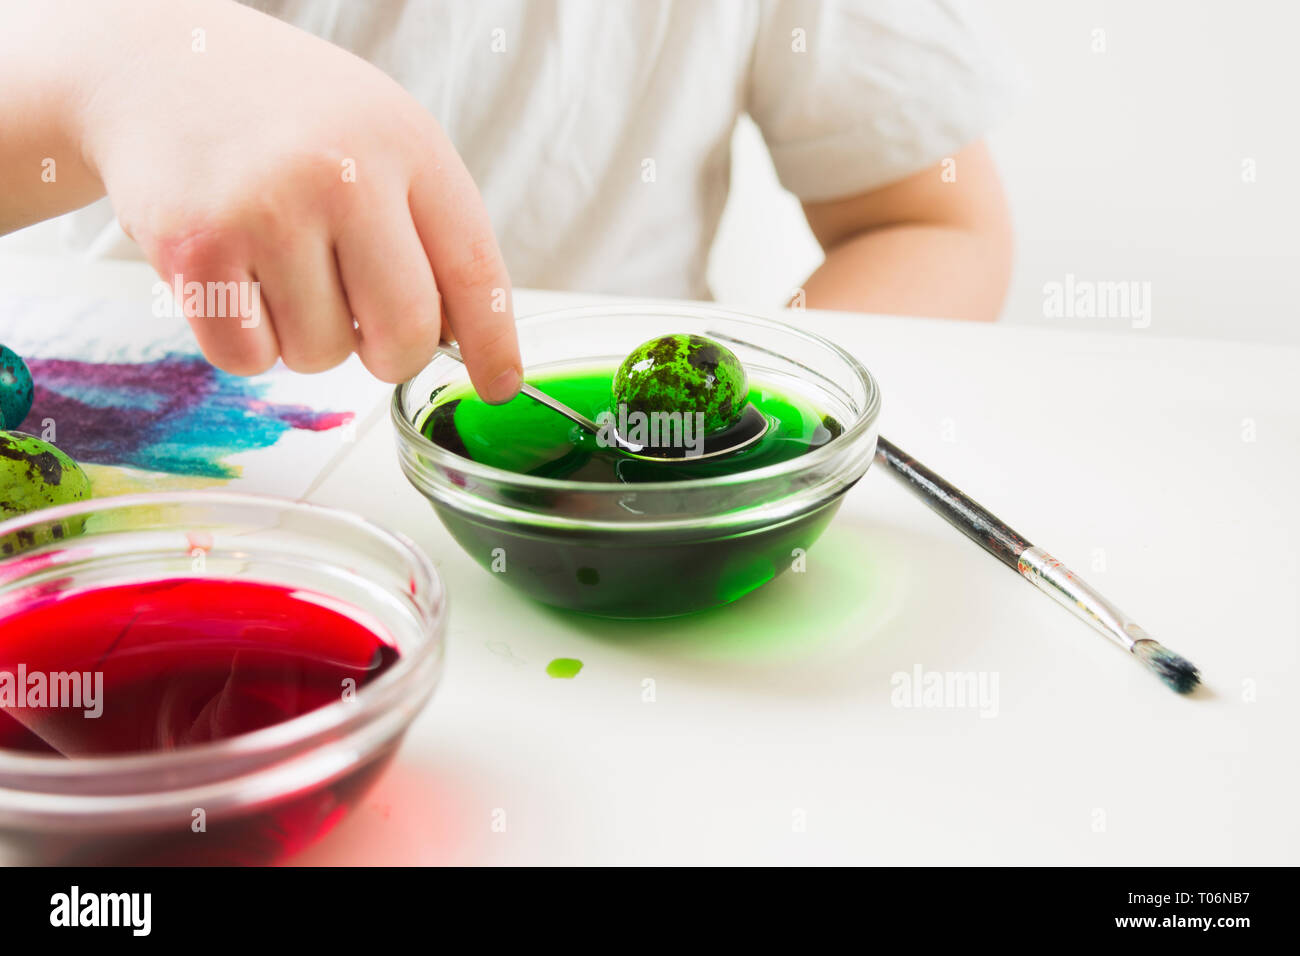 Bambino la mano che regge il cucchiaio con uovo verde, bambino dipinto uova di quaglia per Pasqua sul tavolo bianco Foto Stock